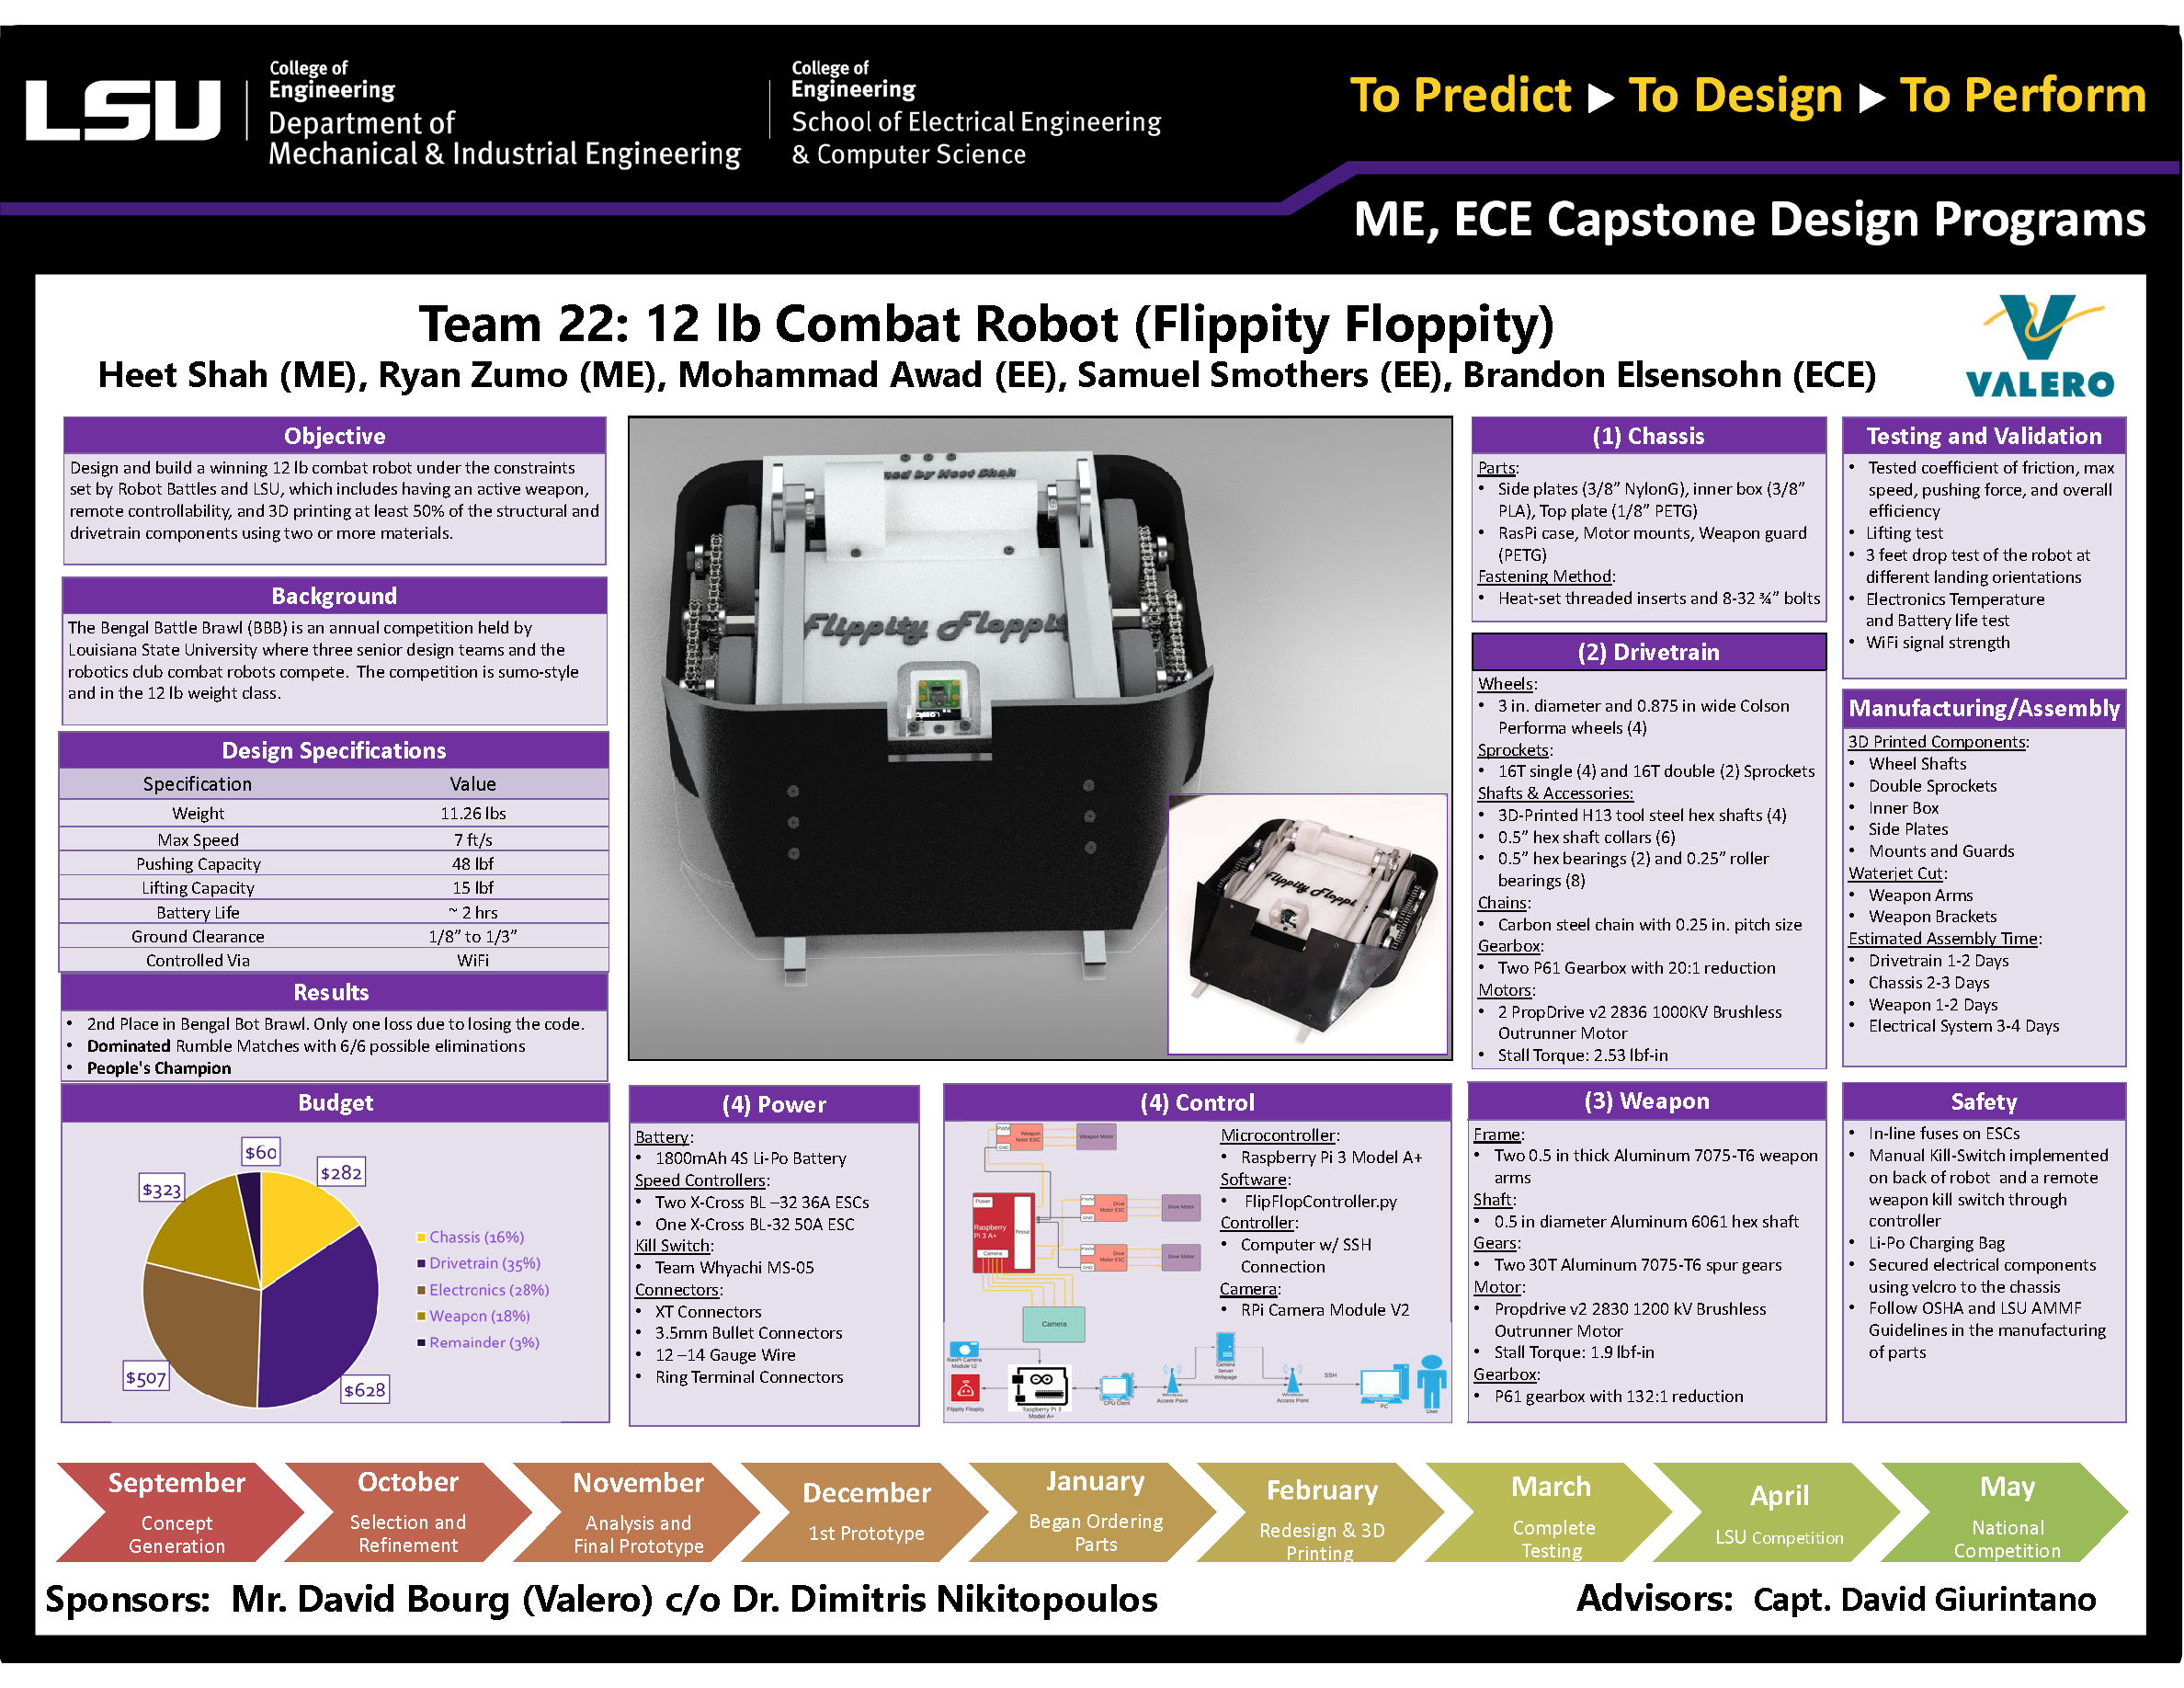 Project 22: 12lb Combat Robot “Flippity Floppity” (2021)